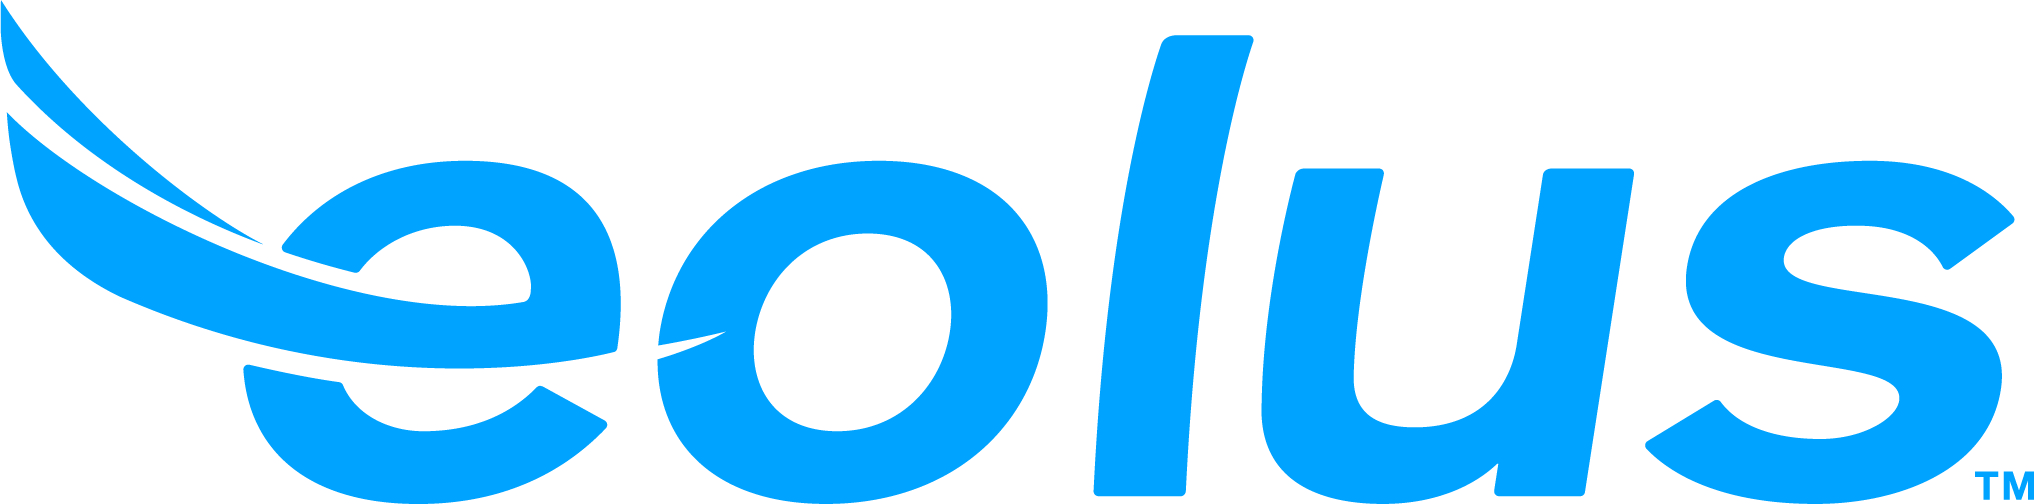 Eolus Vind logo